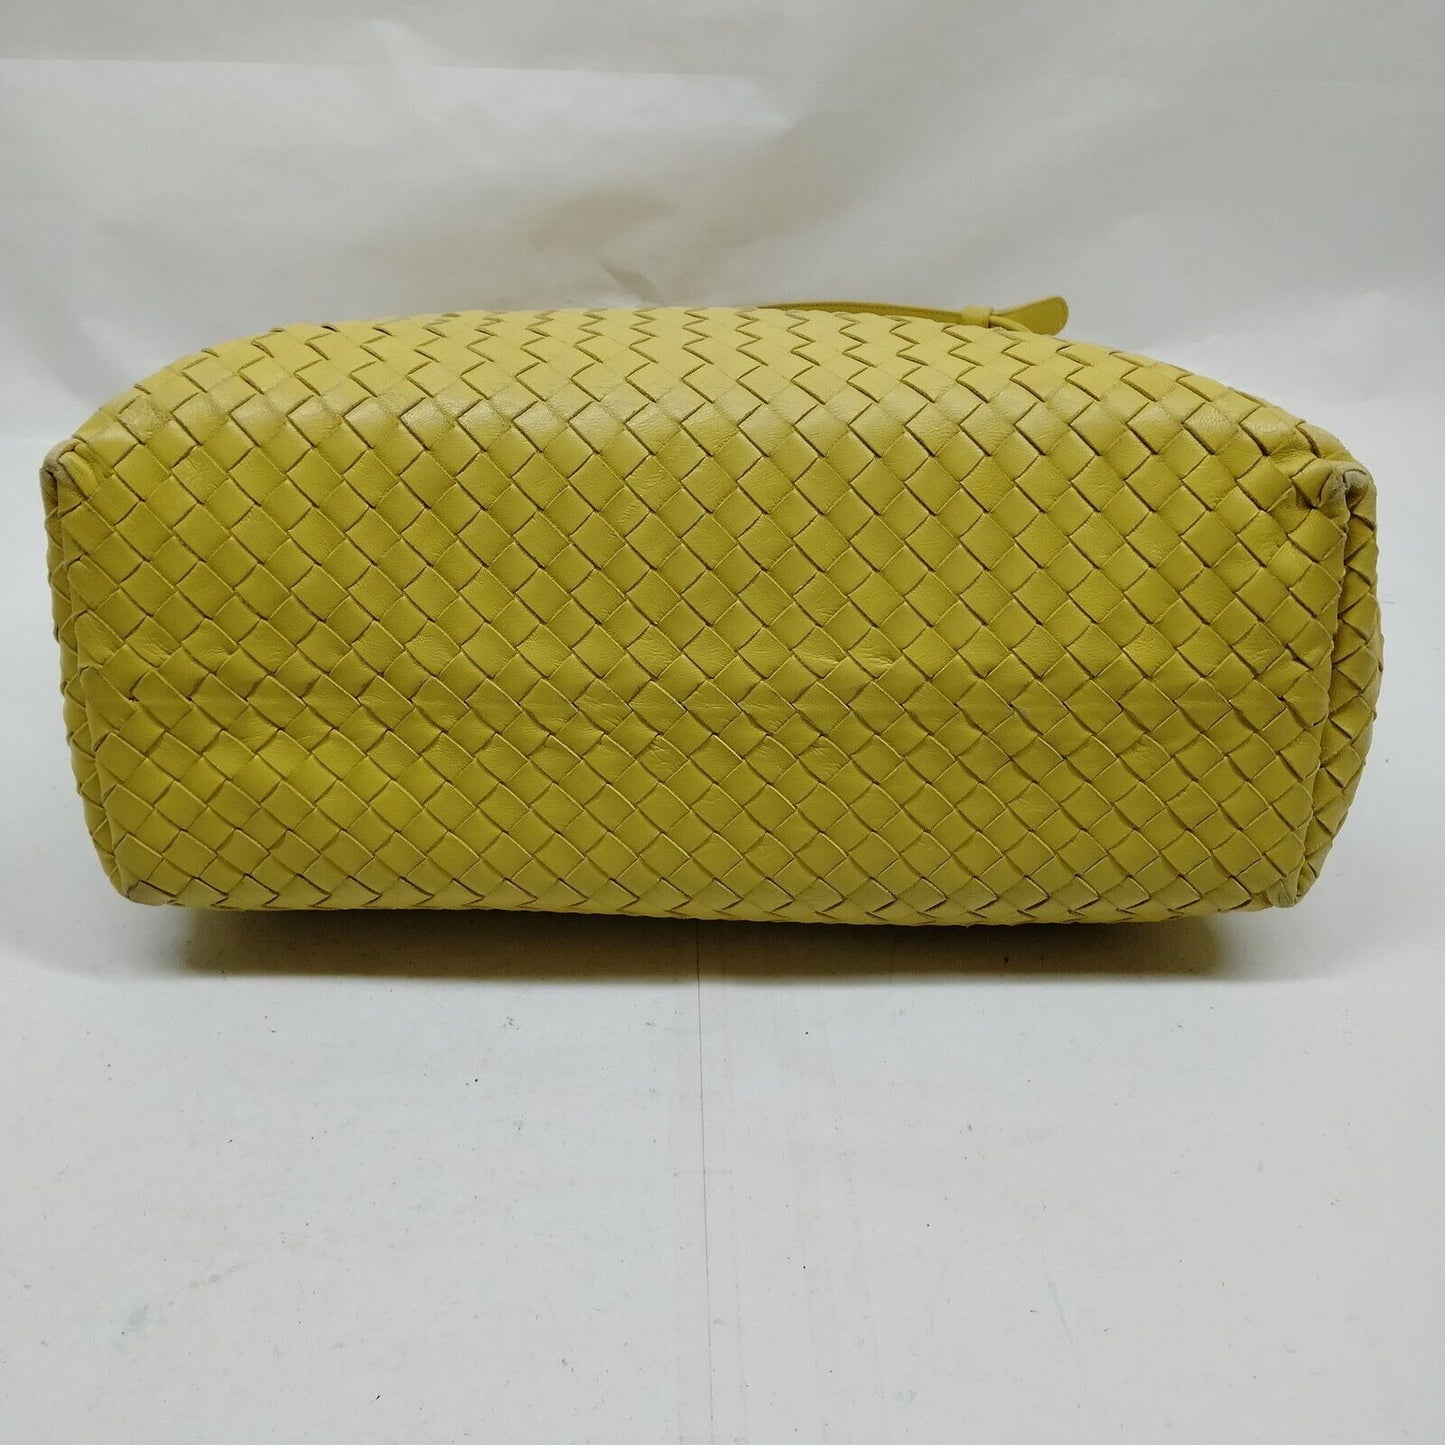 Bottega Veneta intrecciato yellow leather XL tote style purse